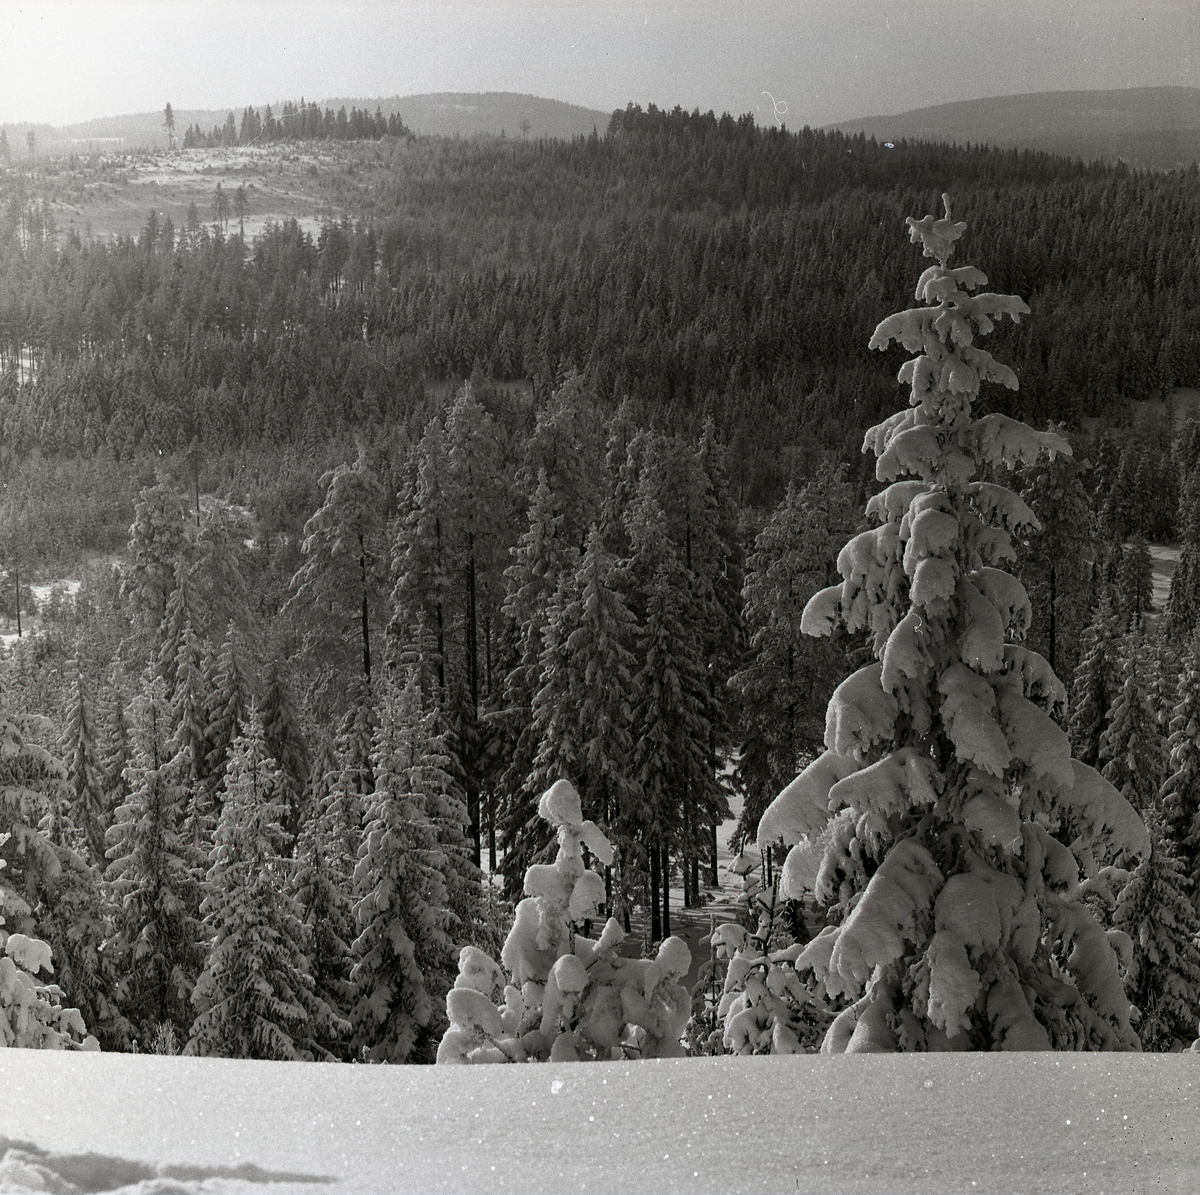 Mycket snö på skog och berg, Skogberget, 22 februari 1960.